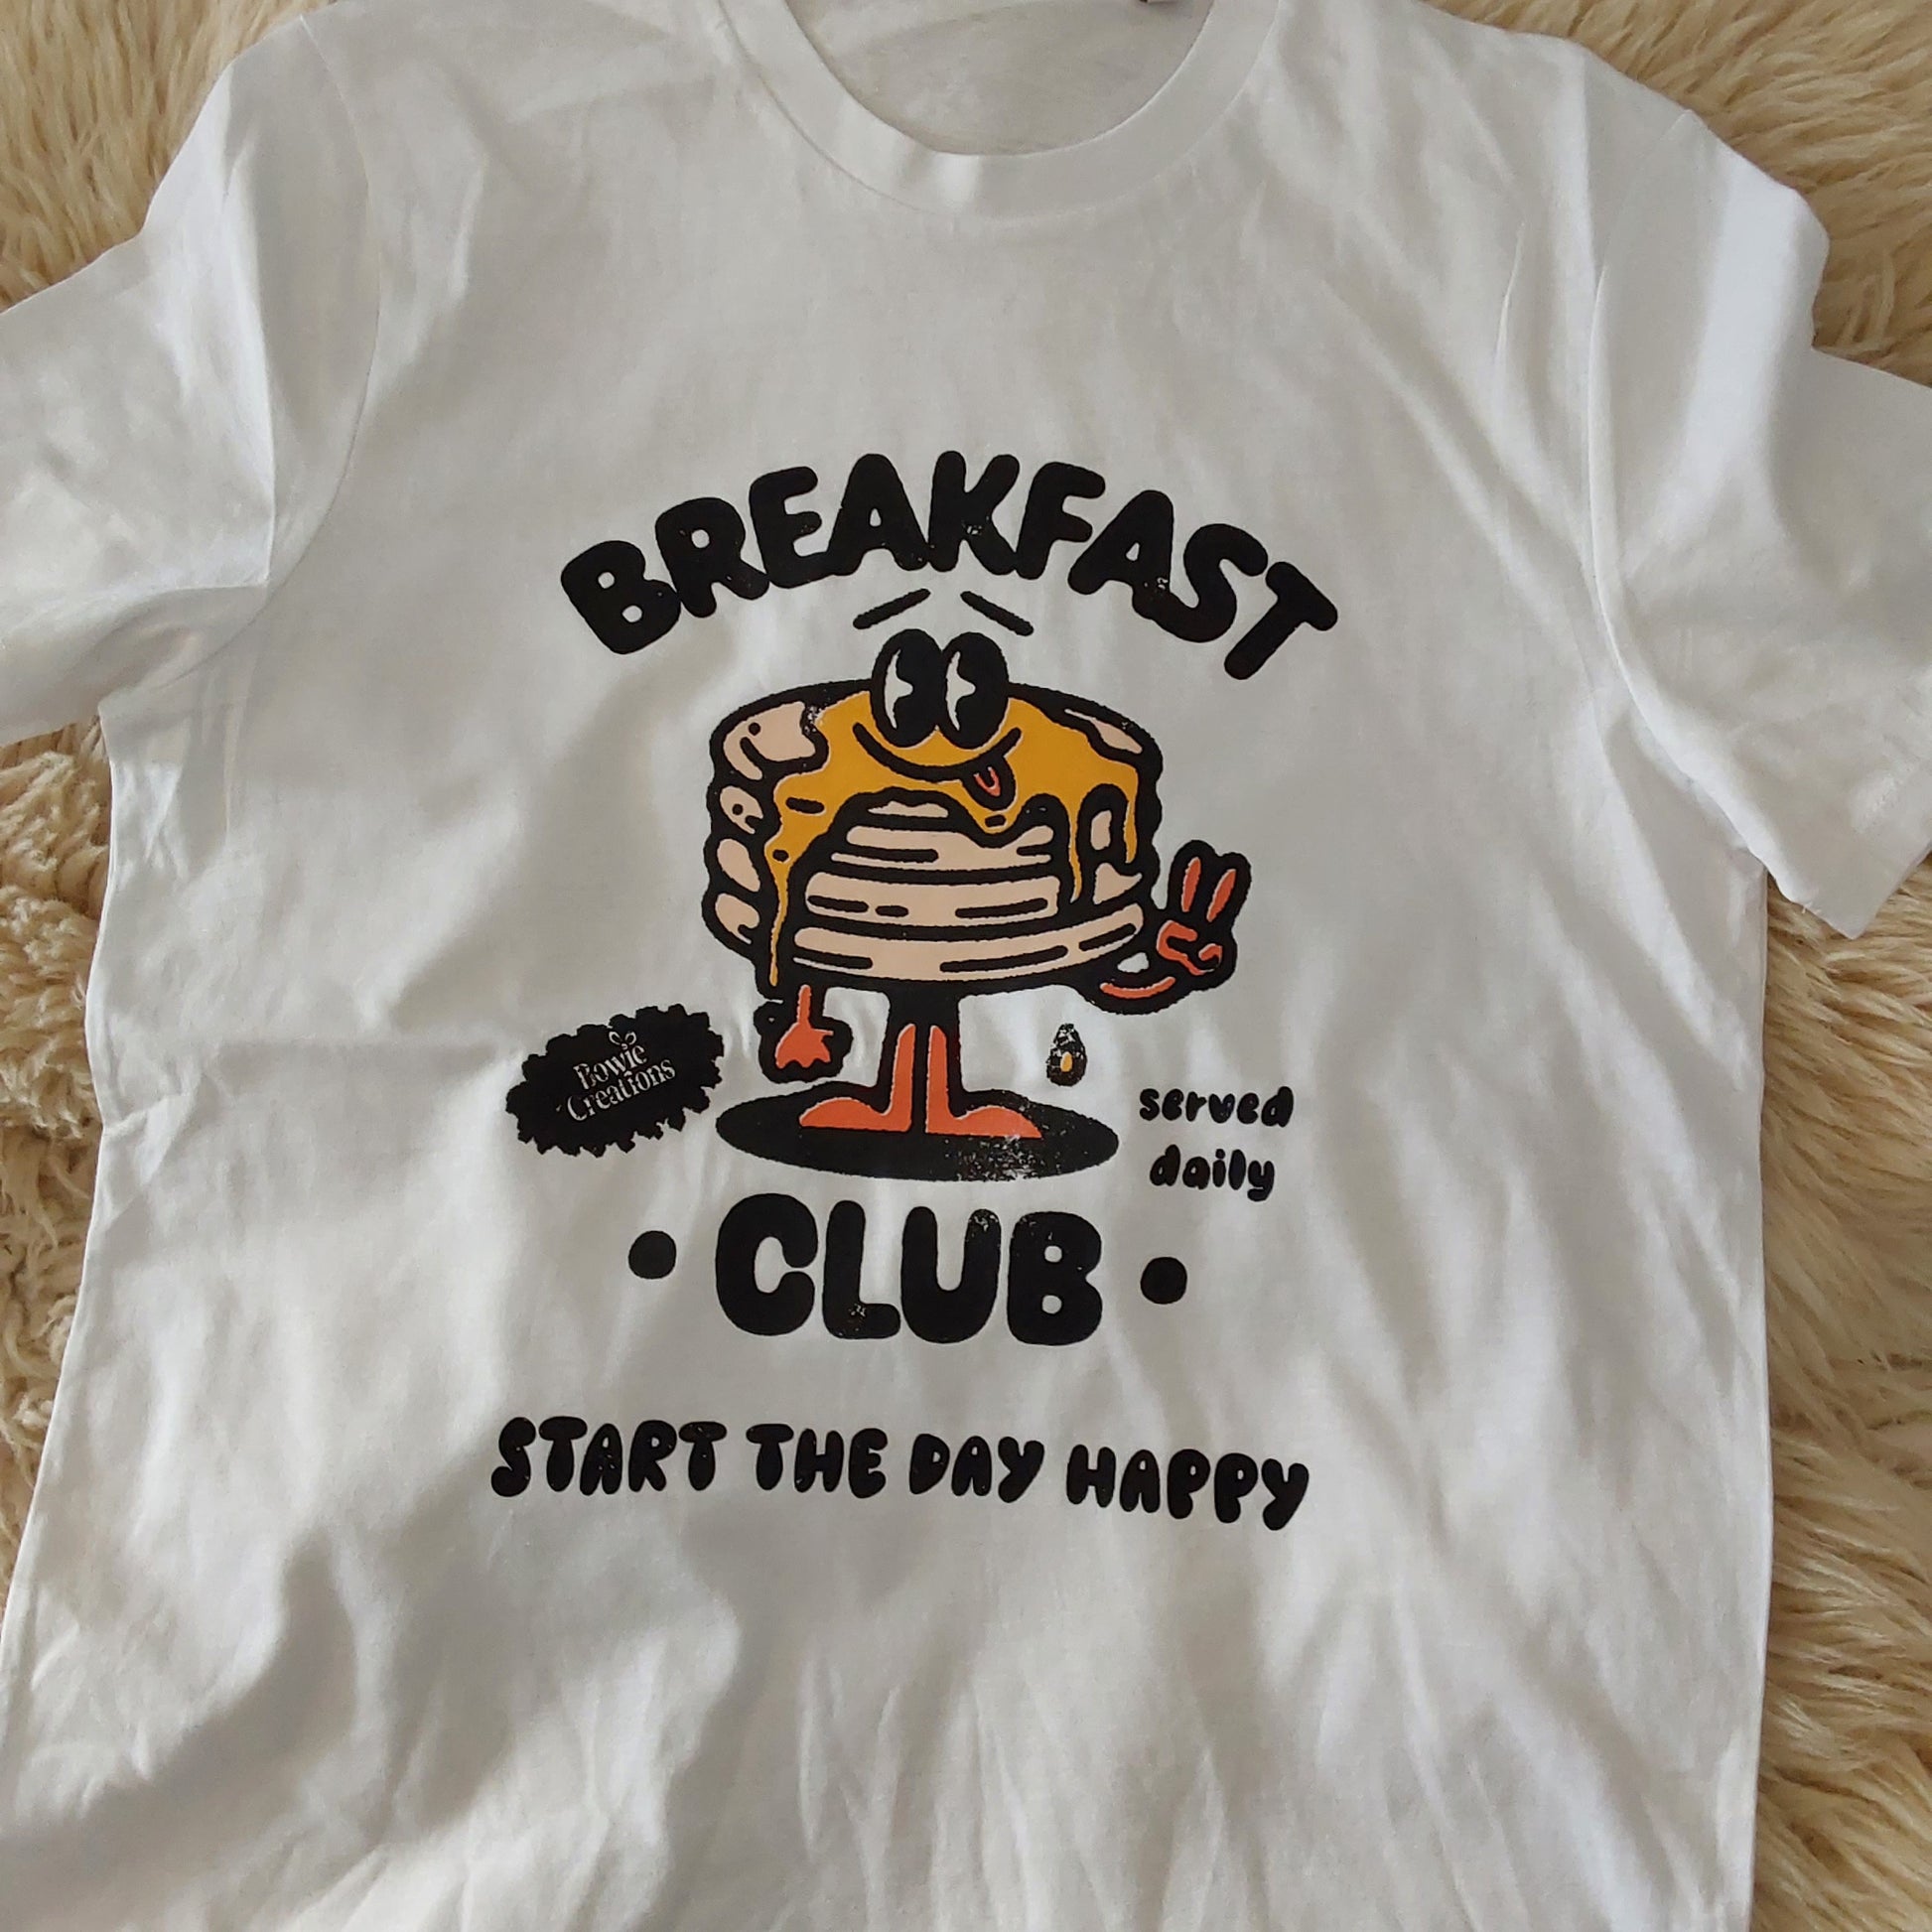 Breakfast club tshirt